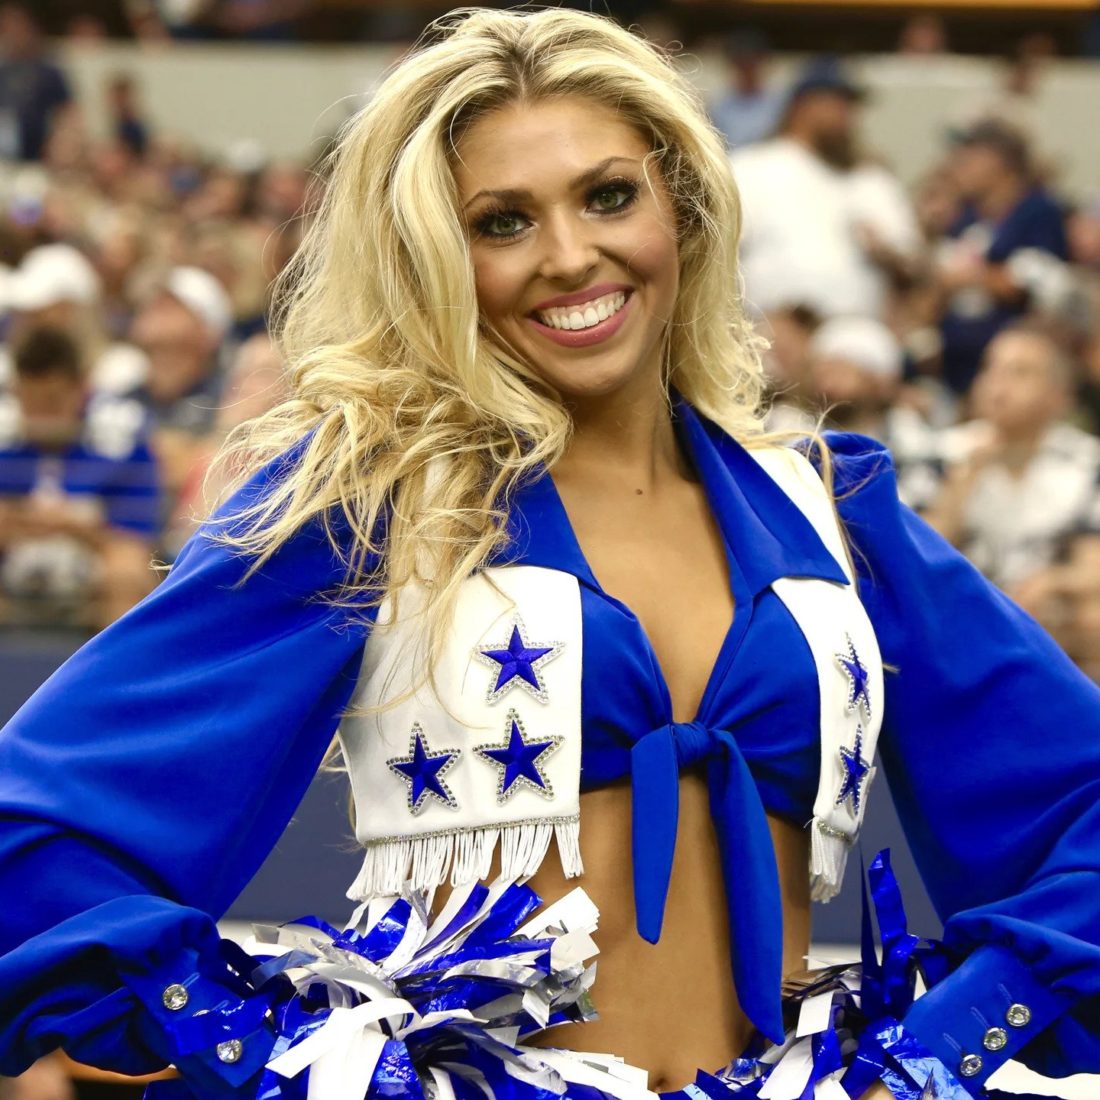 Dreams Do Come True: Victoria – Dallas Cowboys Cheerleaders